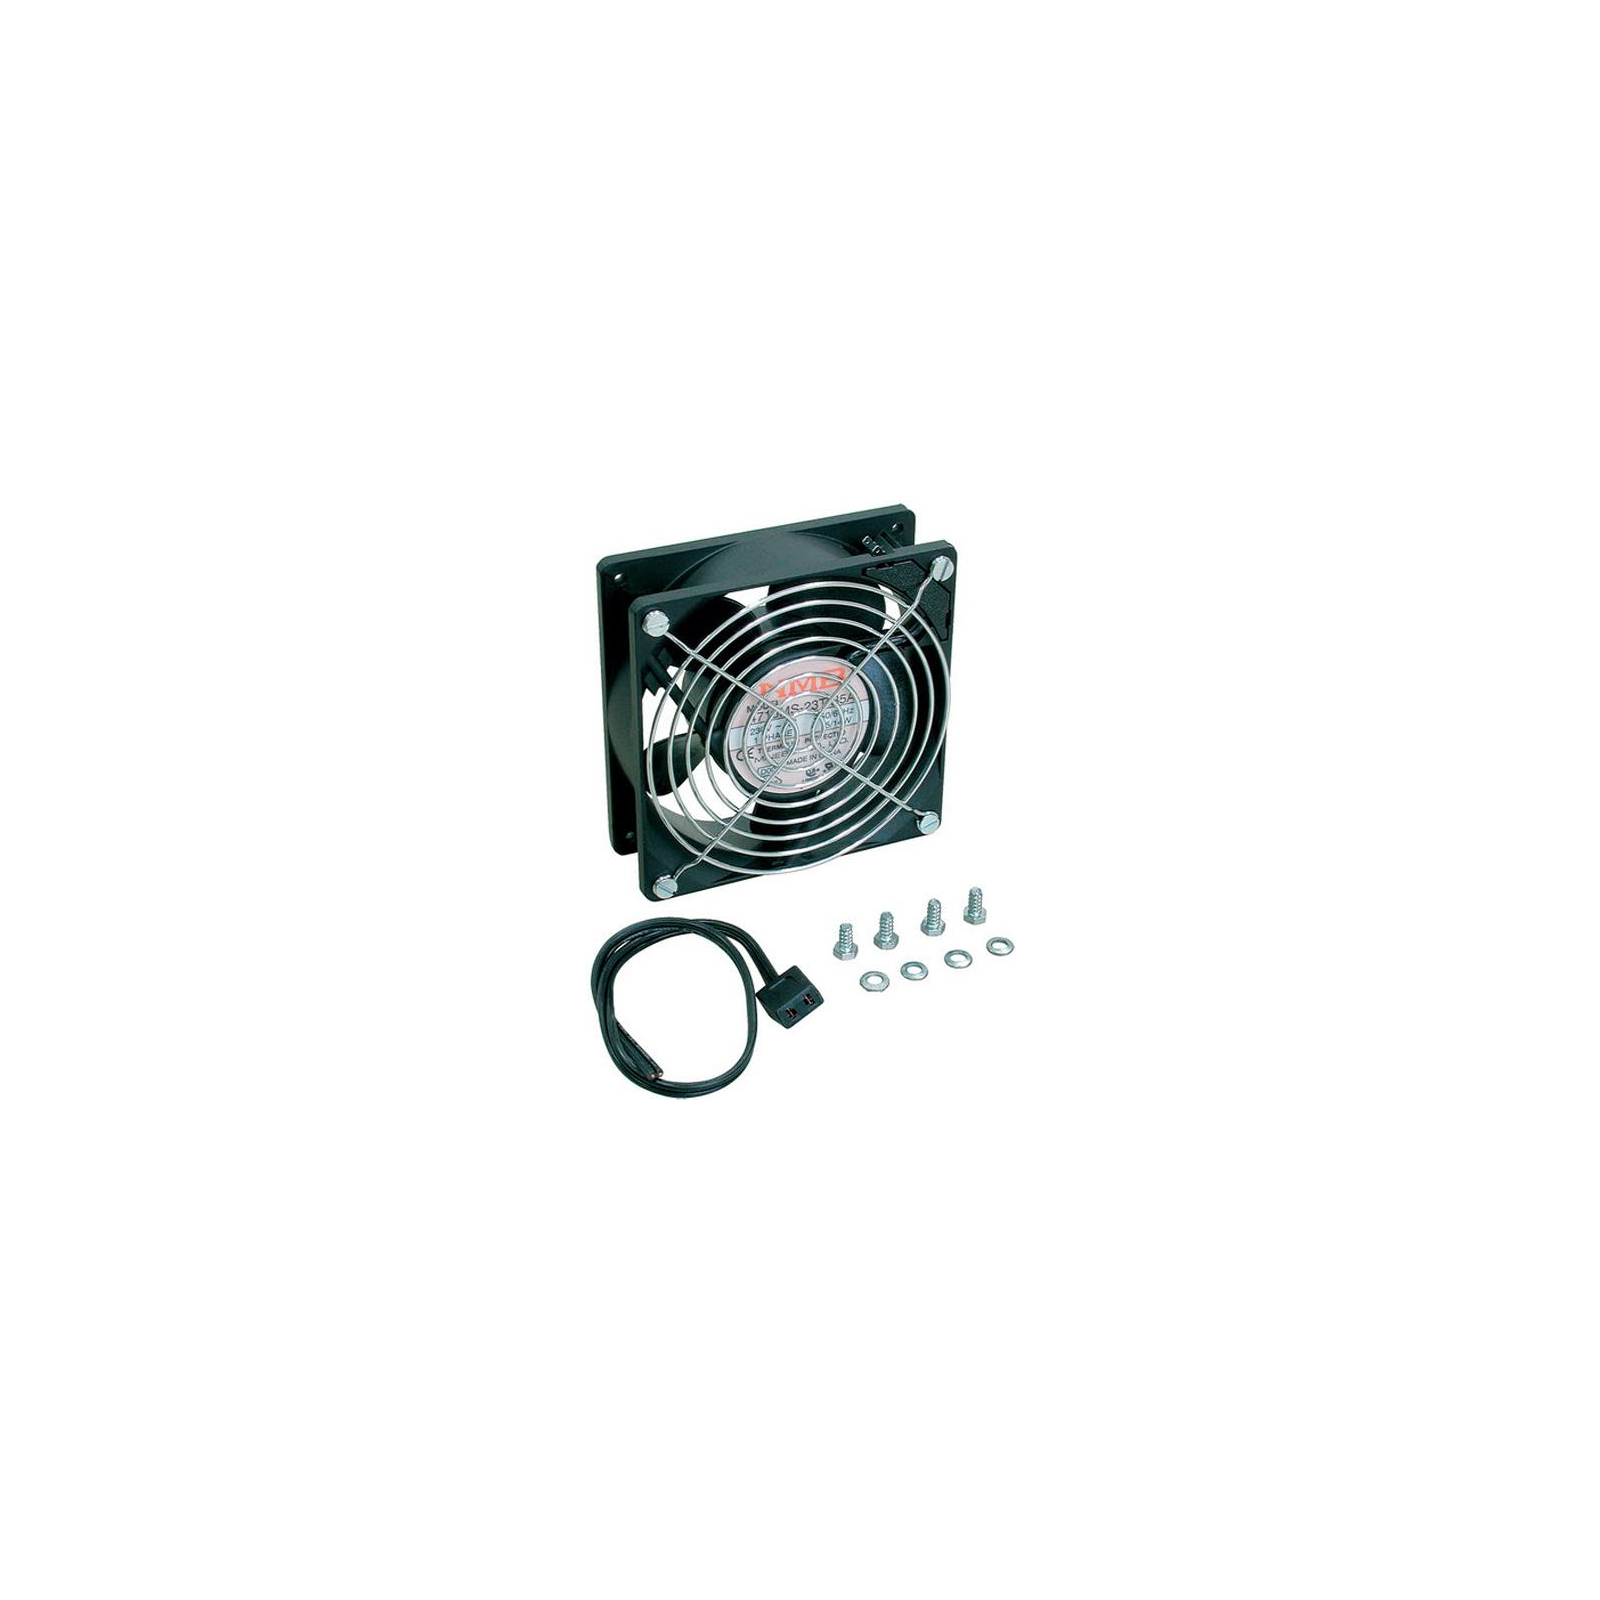 Вентиляторний модуль Zpas 220В, для навесных шкафов Z-BOX, SD2, SJ2, SJB (WN-0200-04-00-000)